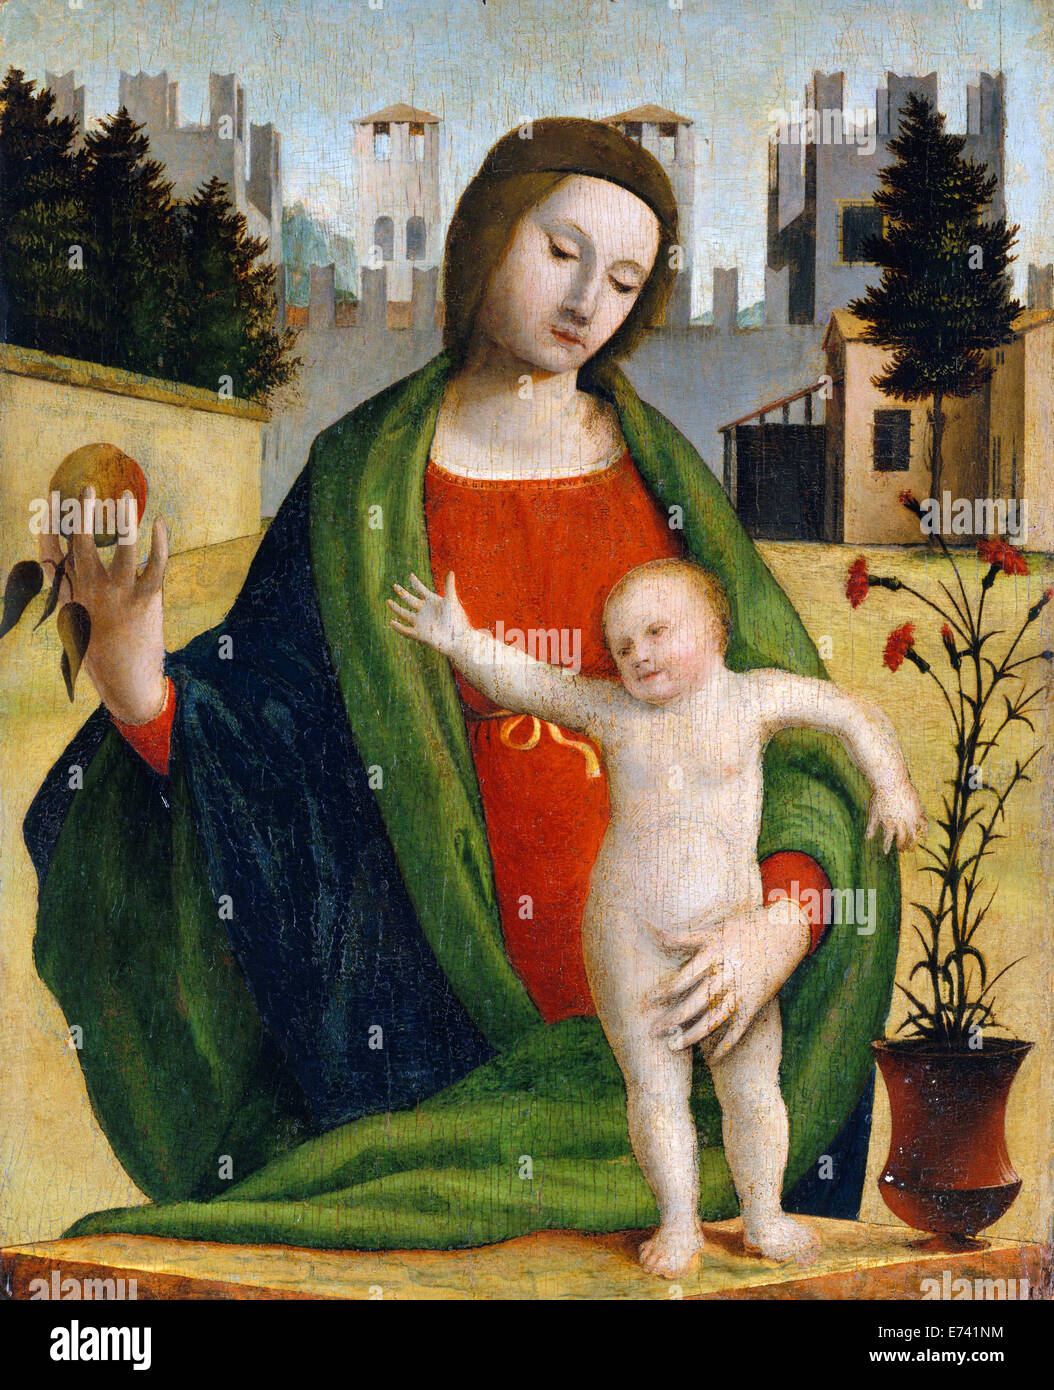 La Madonna e il bambino - Da Bramantino, 1508 Foto Stock